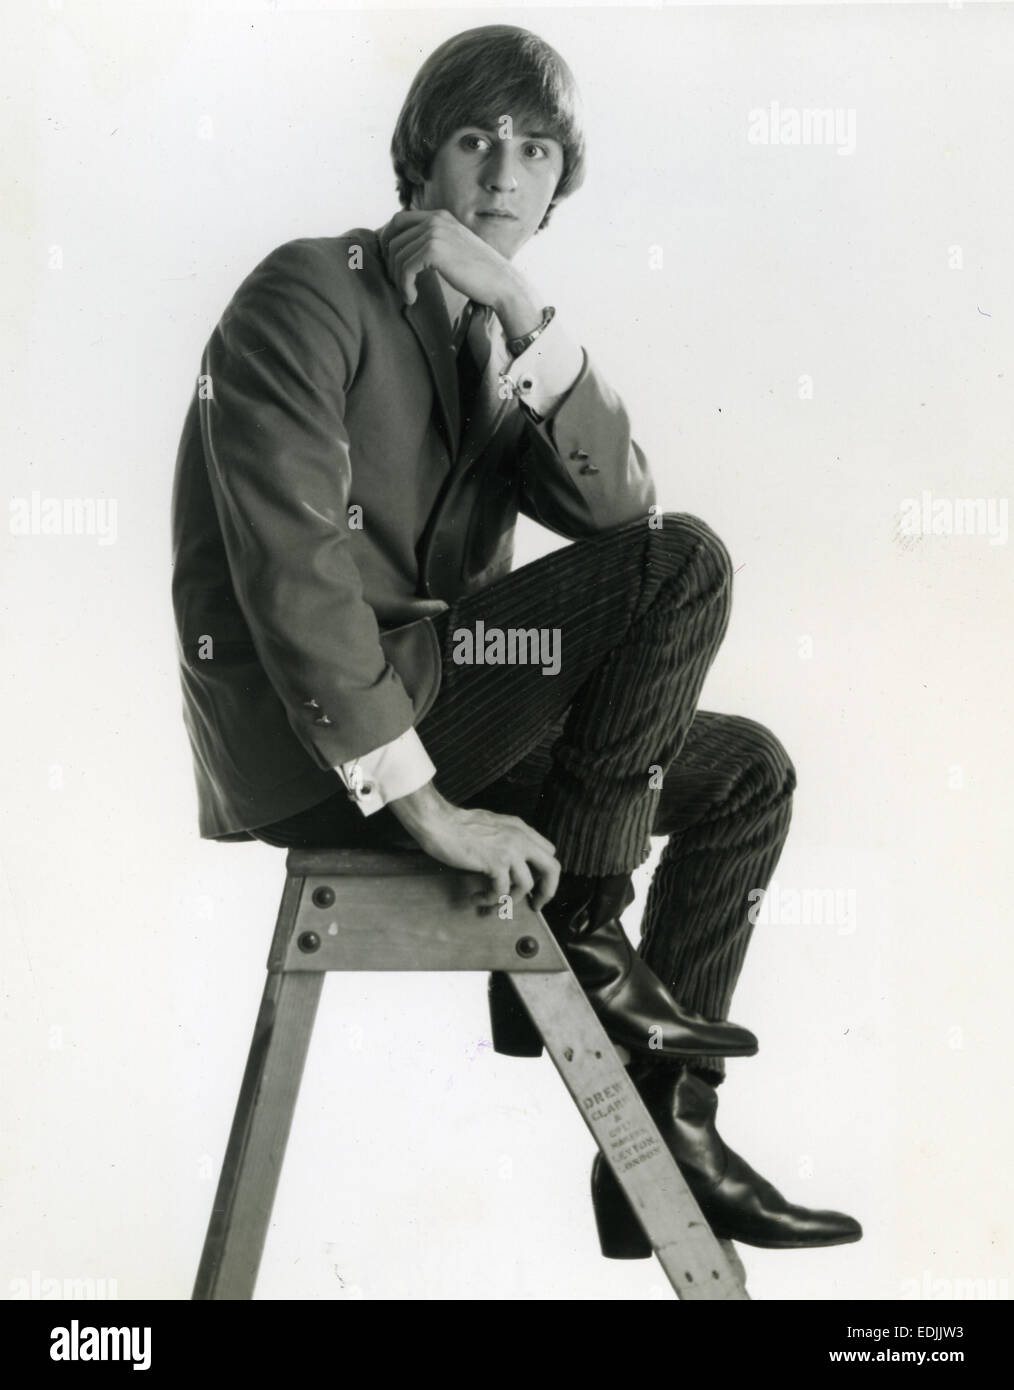 BOBBY JAMESON foto promozionale di noi il cantautore circa 1964 Foto Stock